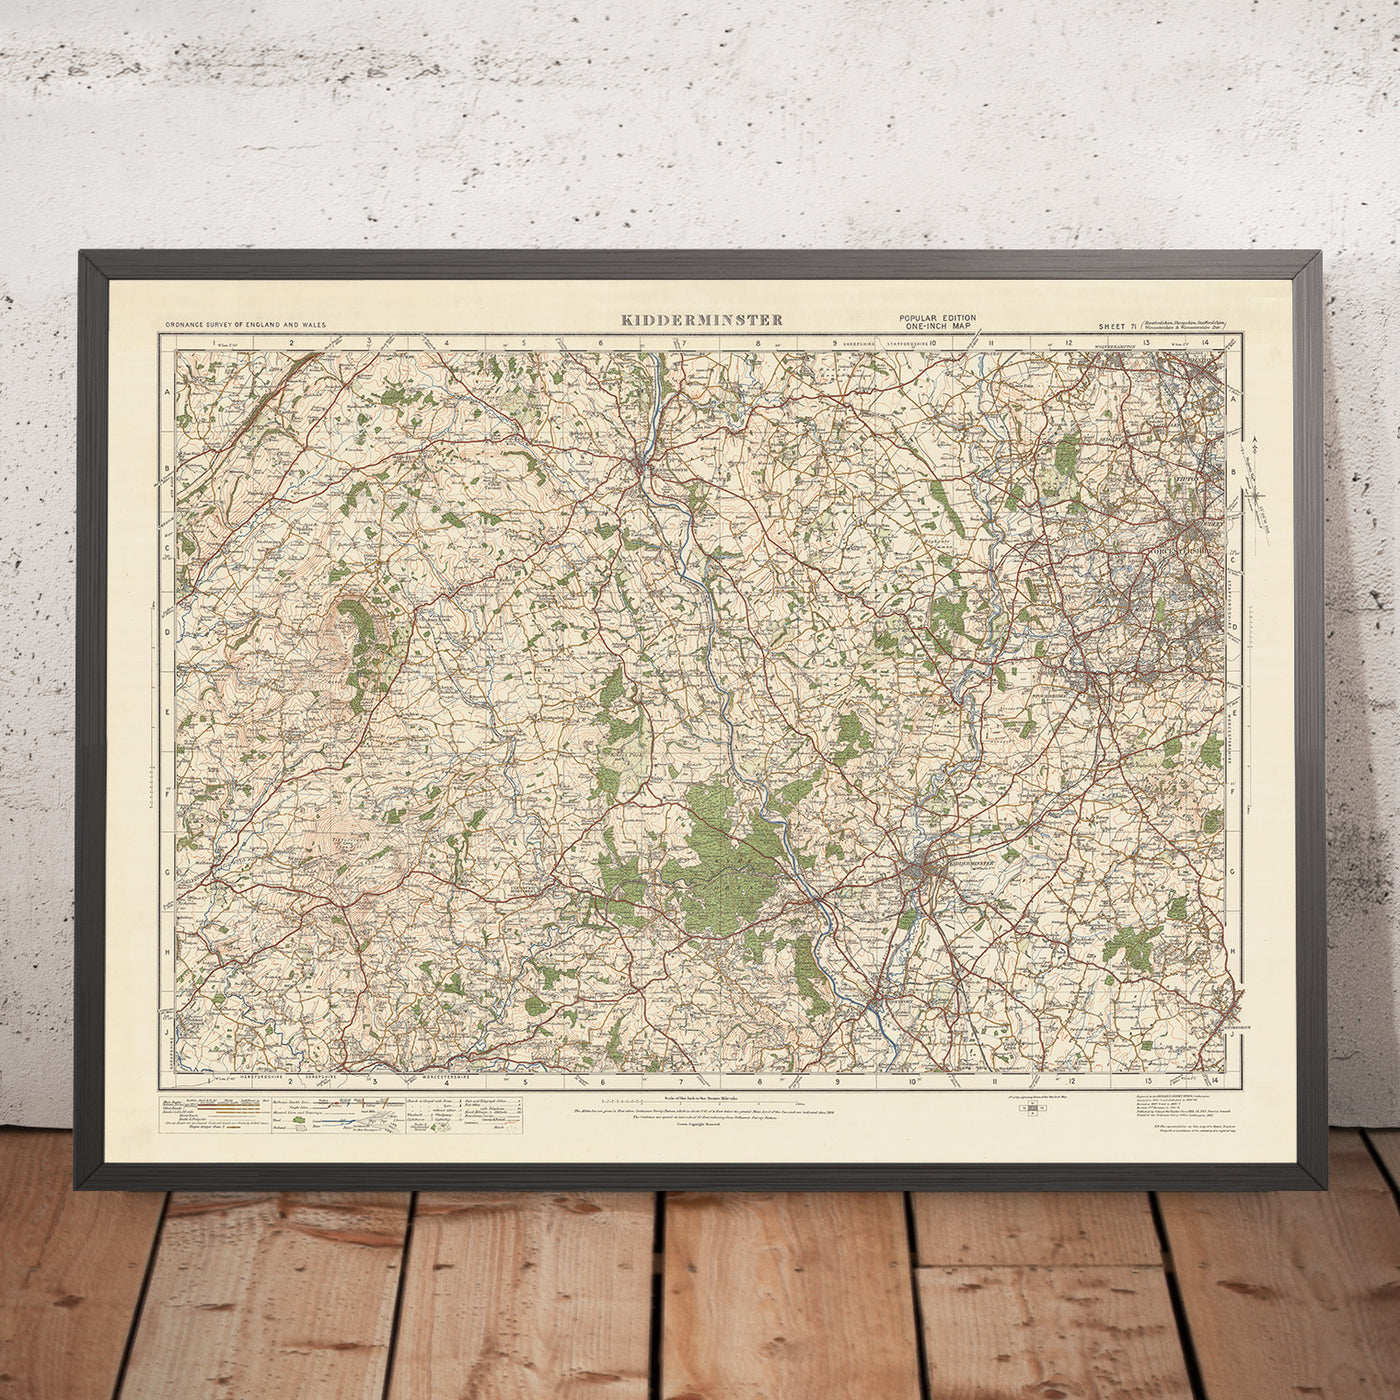 Old Ordnance Survey Map, Blatt 71 – Kidderminster, 1925: Dudley, Stourbridge, Stourport-on-Severn, Bridgnorth, Wyre Forest National Nature Reserve